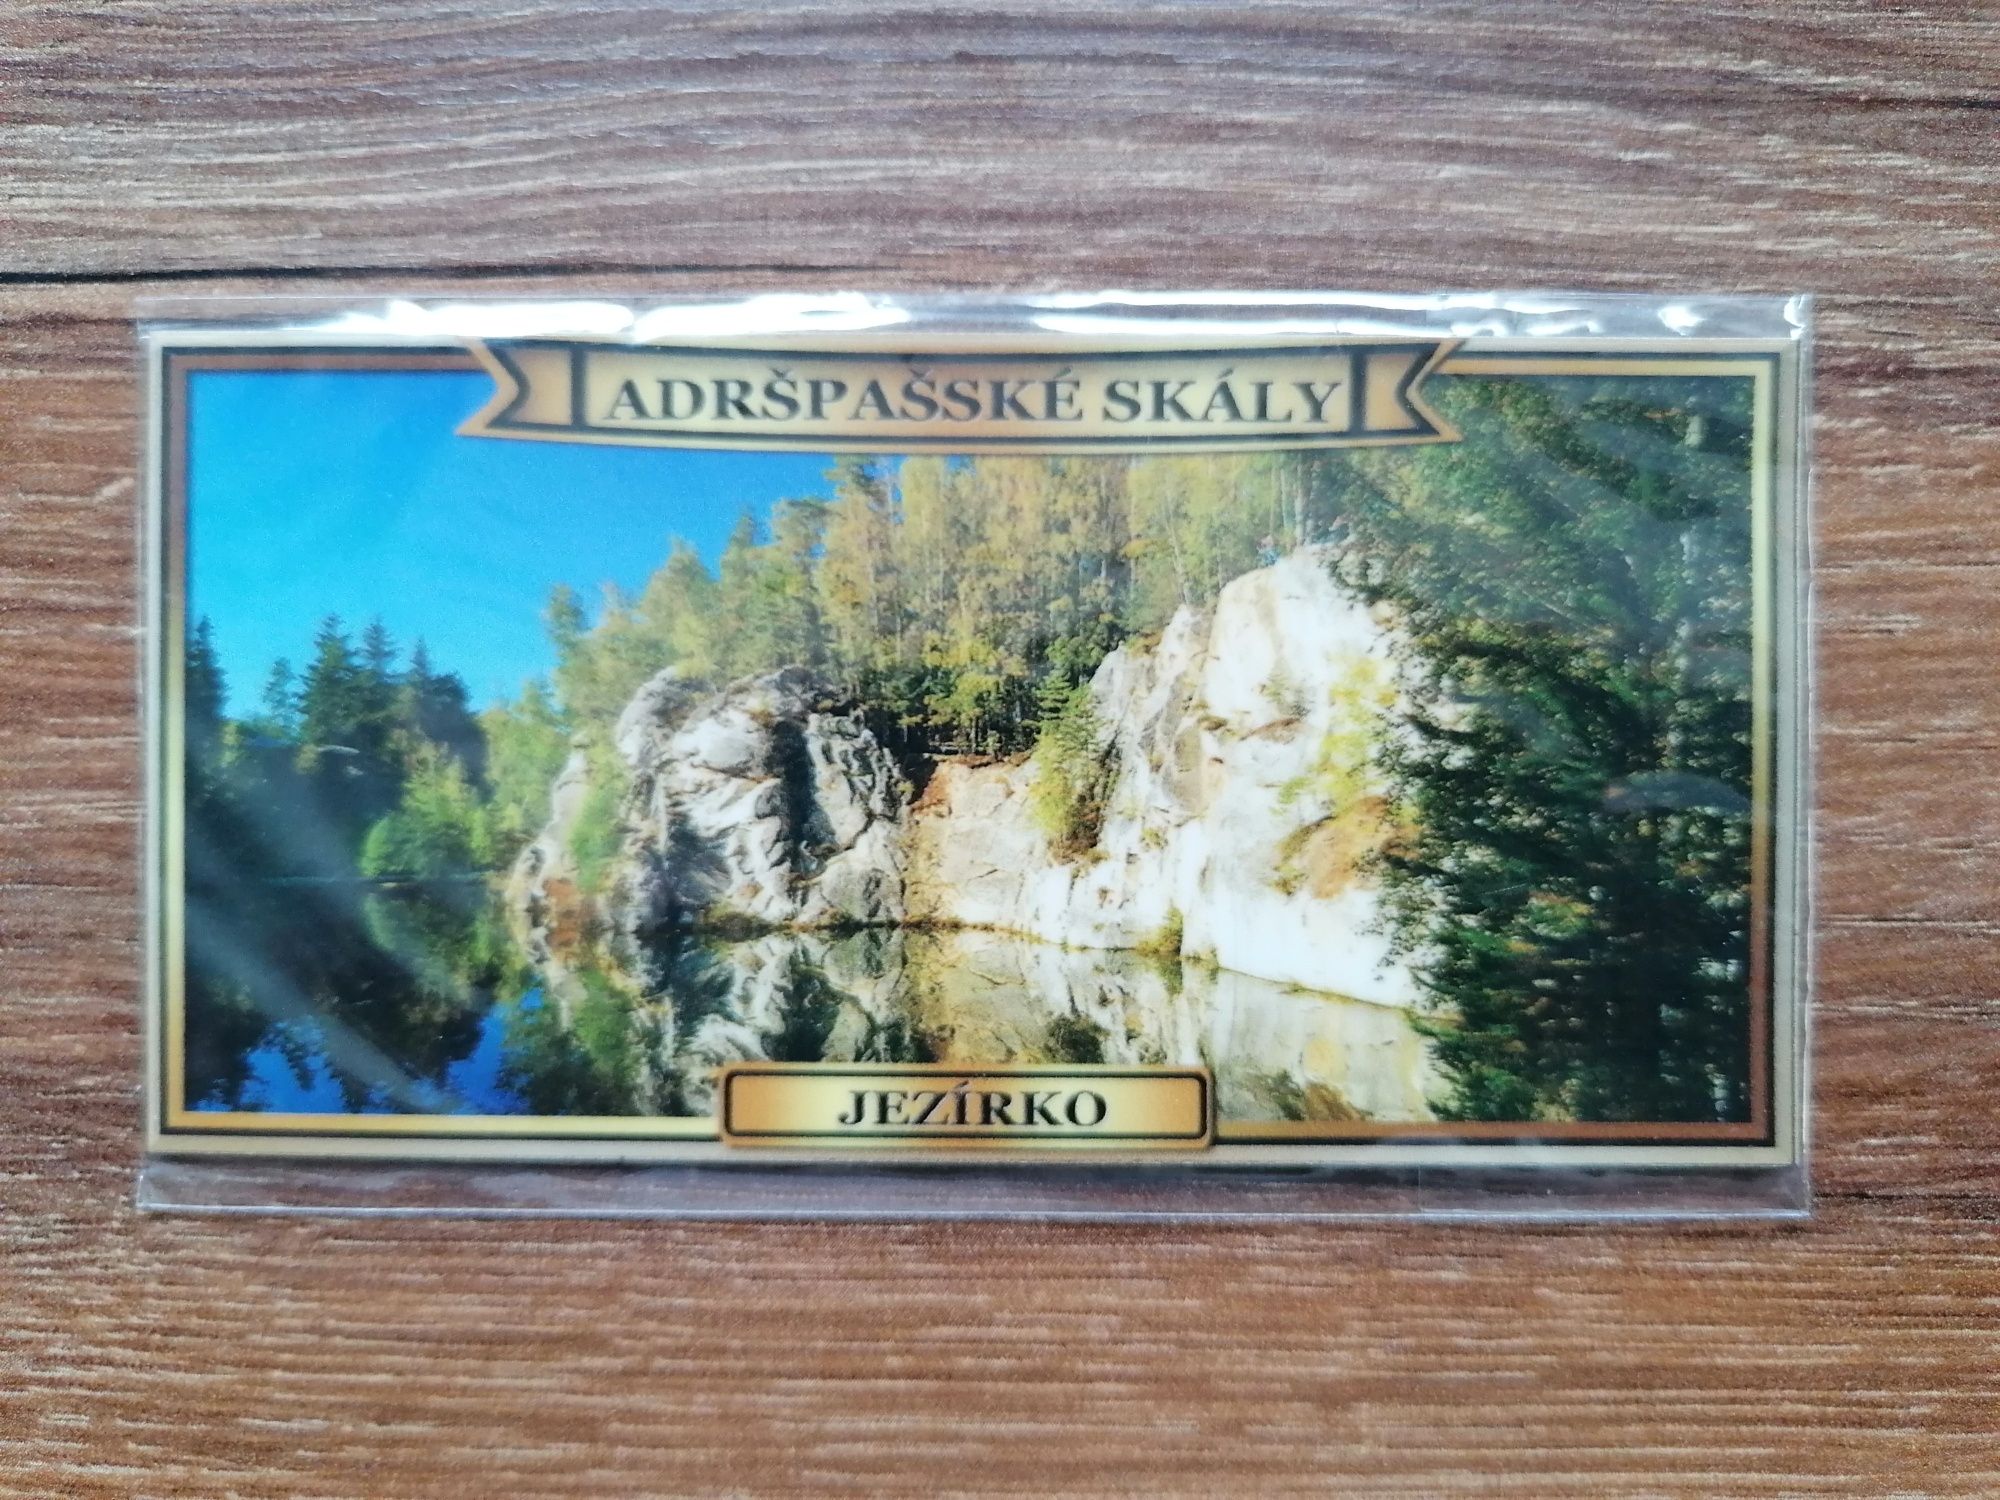 Magnes na lodówkę - Czechy - Adrspasske Skaly - Jezirko